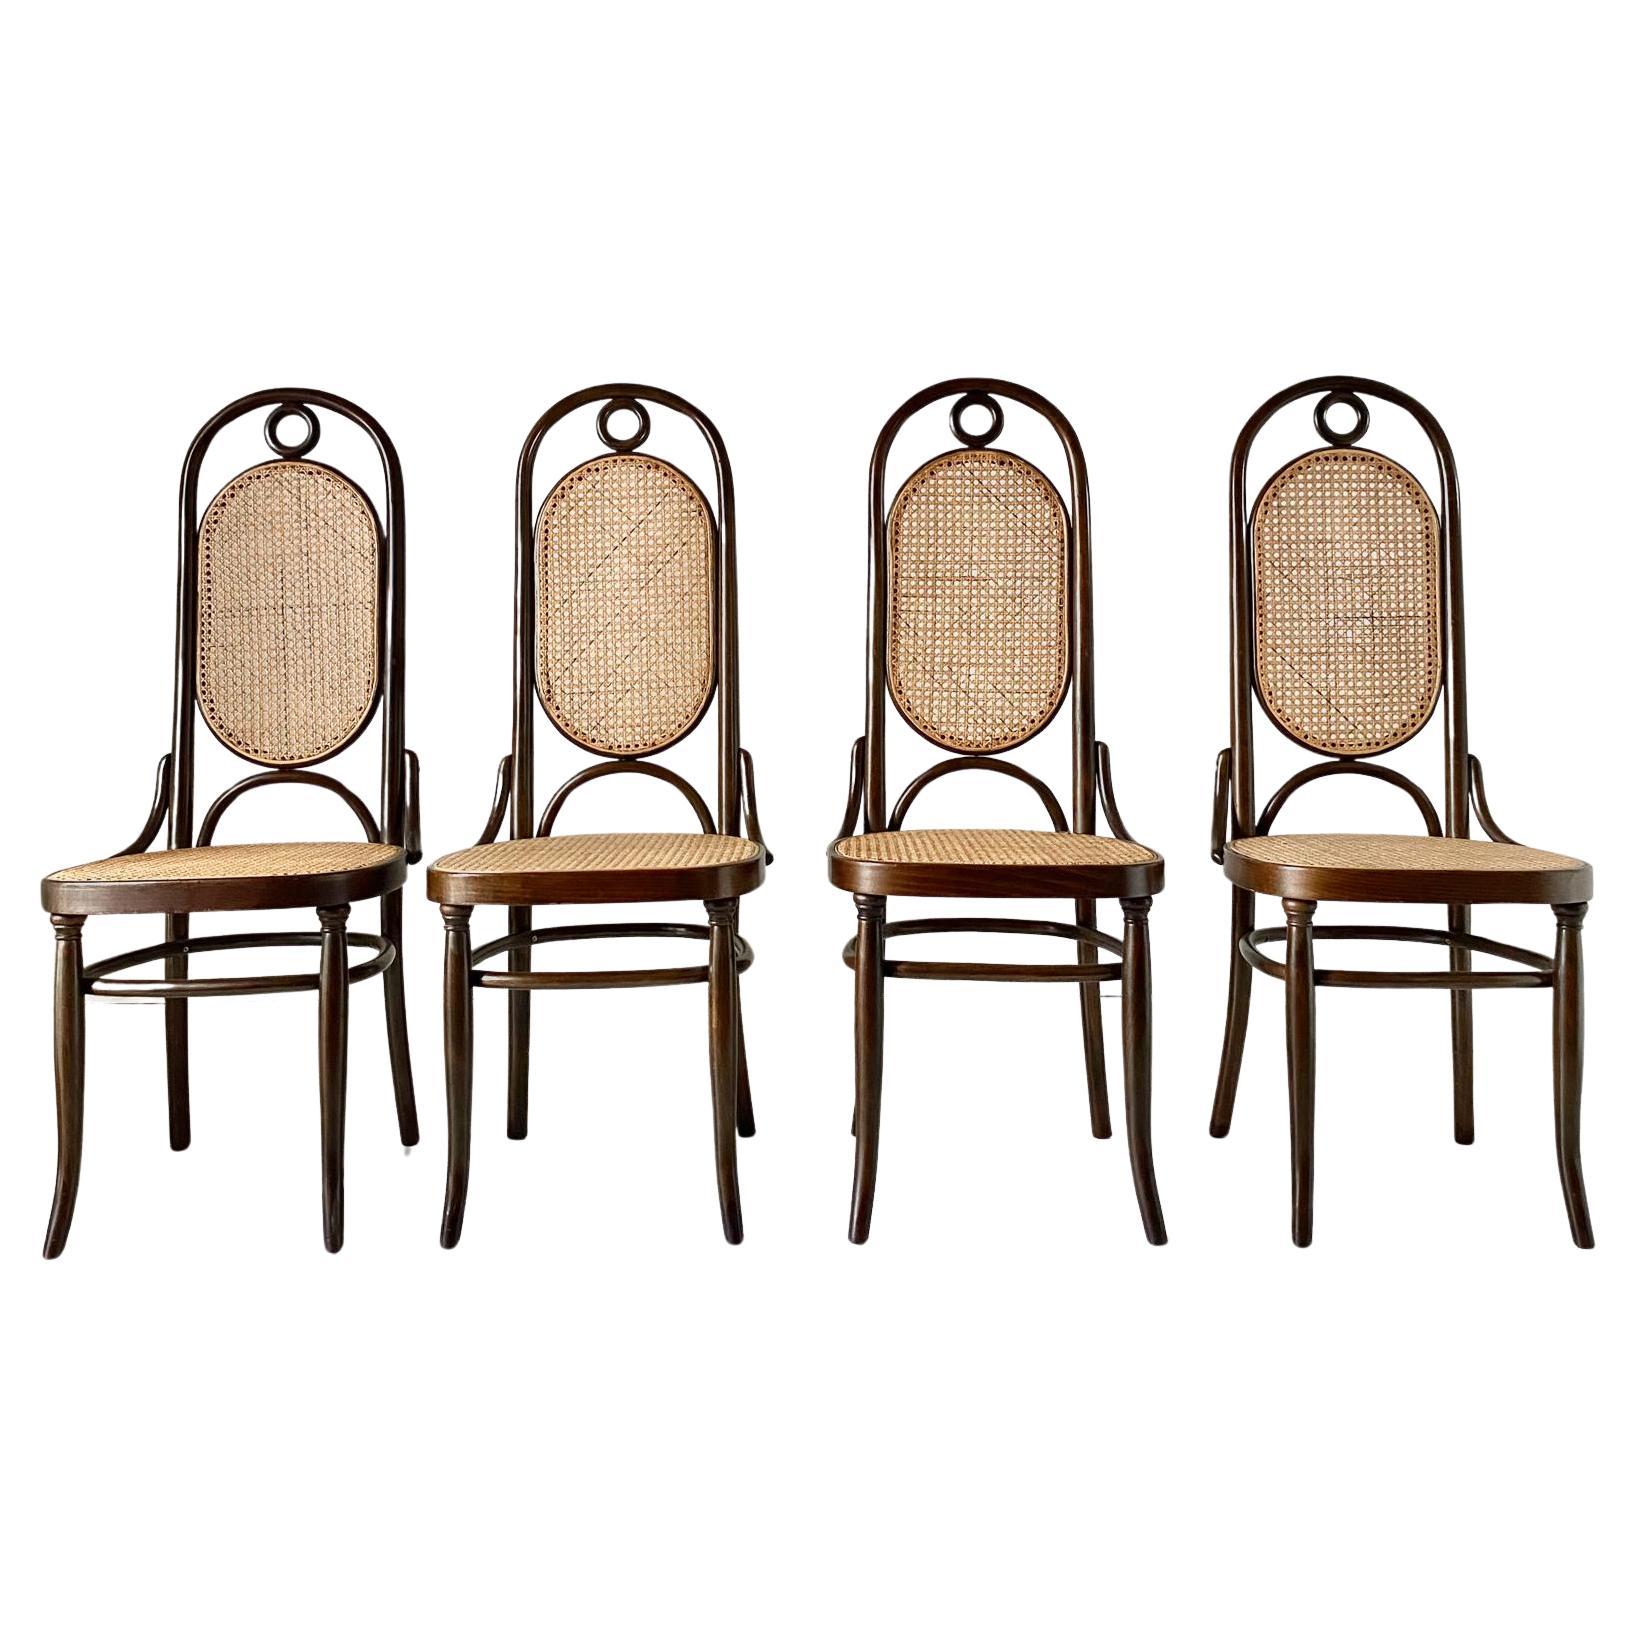 Set di quattro sedie in legno curvato di noce prodotte da Thonet. Modèle 207 (également connu sous le nom de 